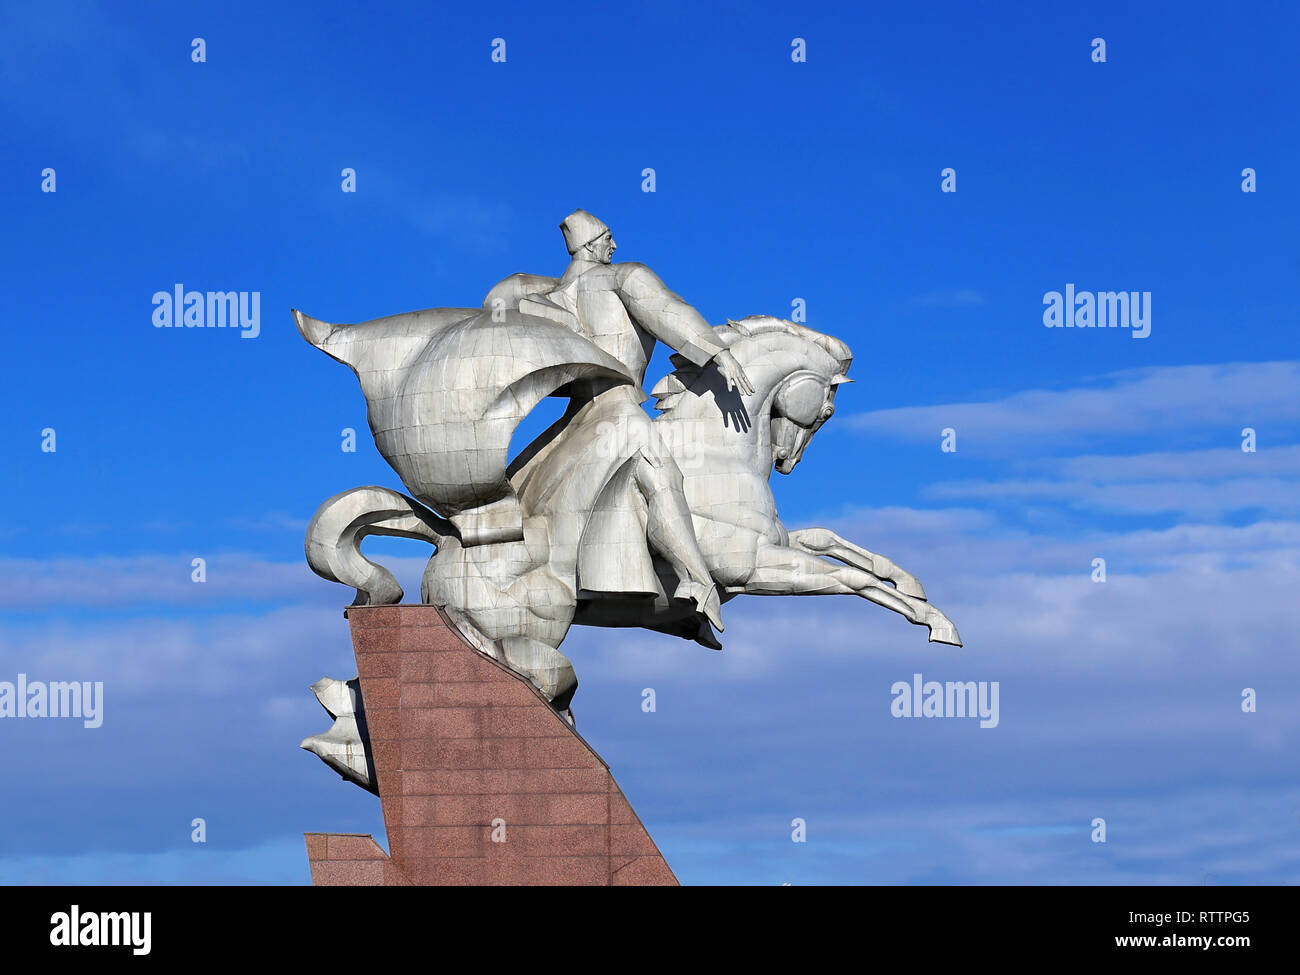 Denkmal ist eine Abbildung des großen Commander, zweimal, Held der Sowjetunion, Isse Alexandrowitsch Pliev, sitzend auf einem Pferd in voller Uniform. Stockfoto